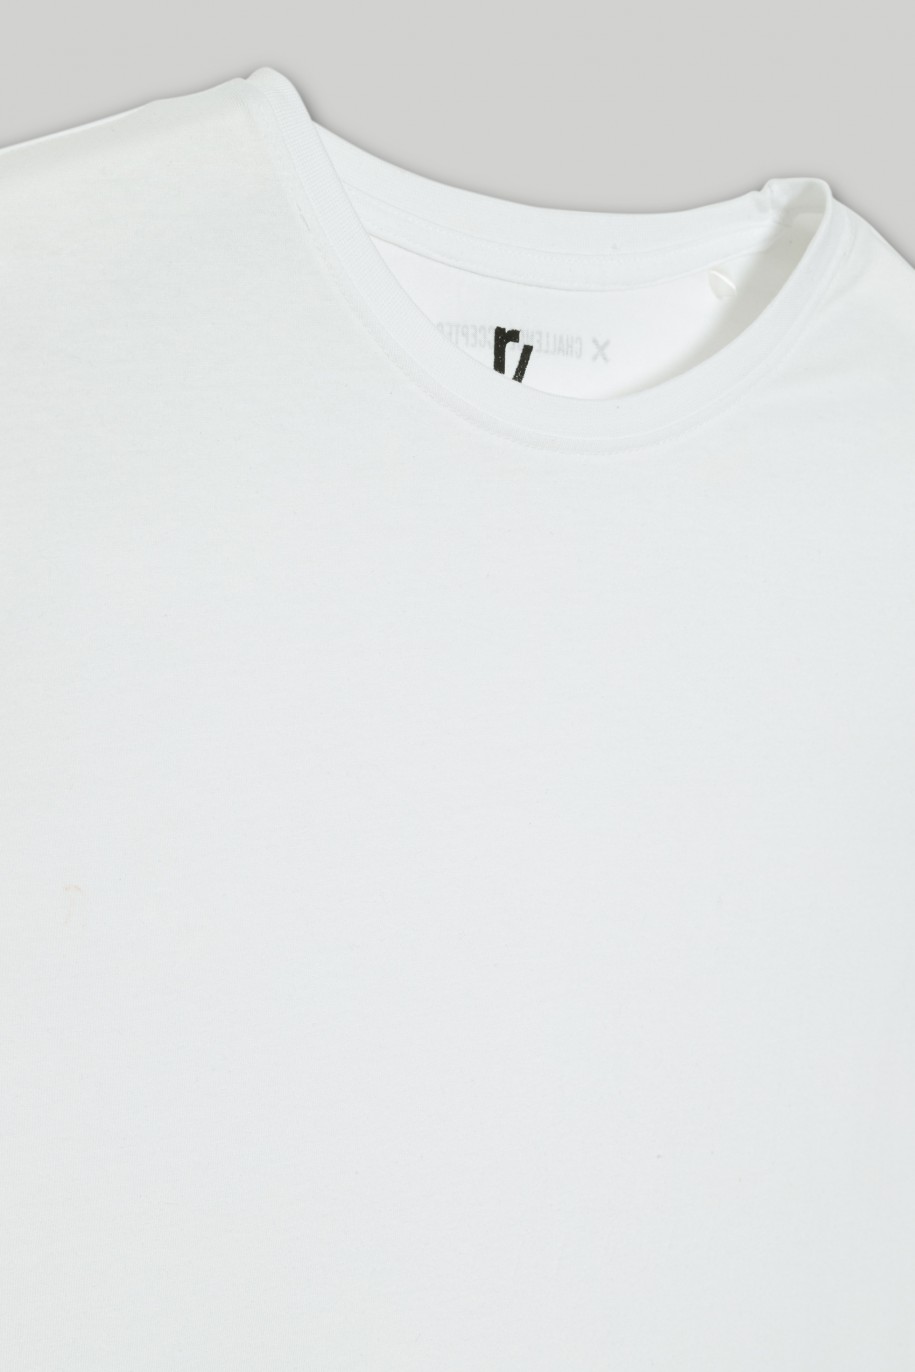 Strój na W-F - czarne spodenki i biały T-shirt - 36330